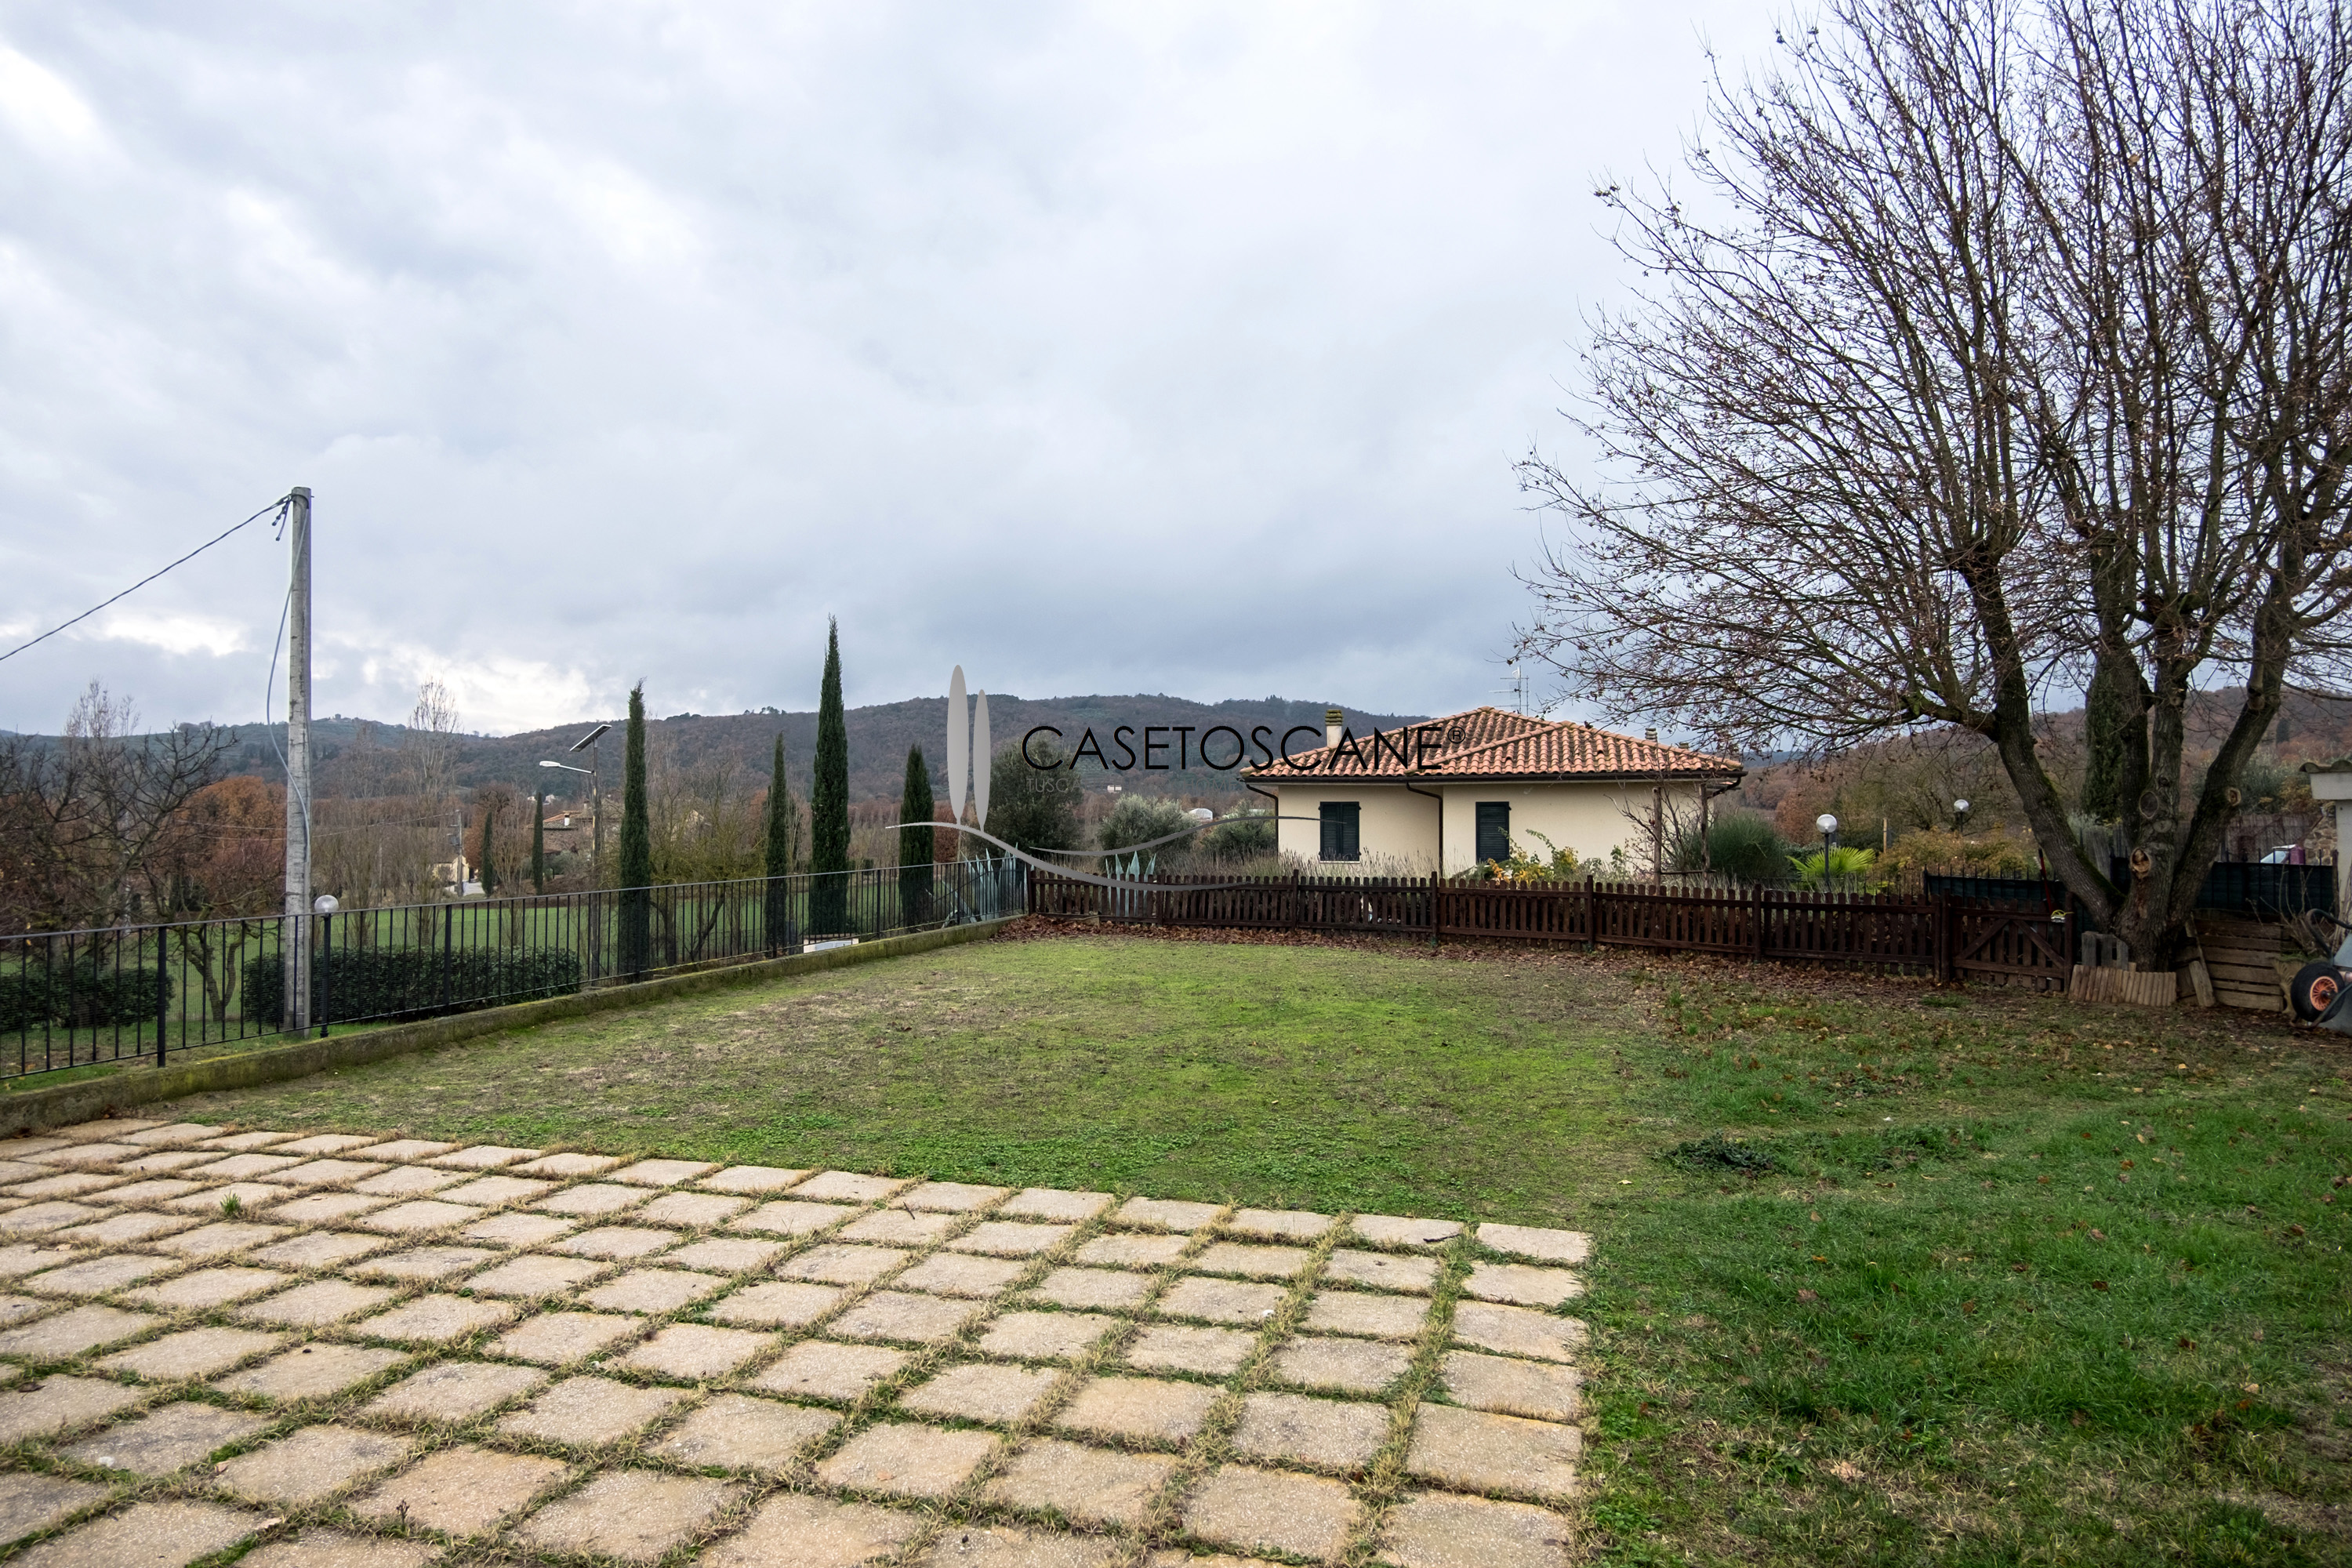 3087 - Villetta a schiera capotesta di mq.150 di recente costruzione a Lucignano (AR), con ampio giardino di mq.300.